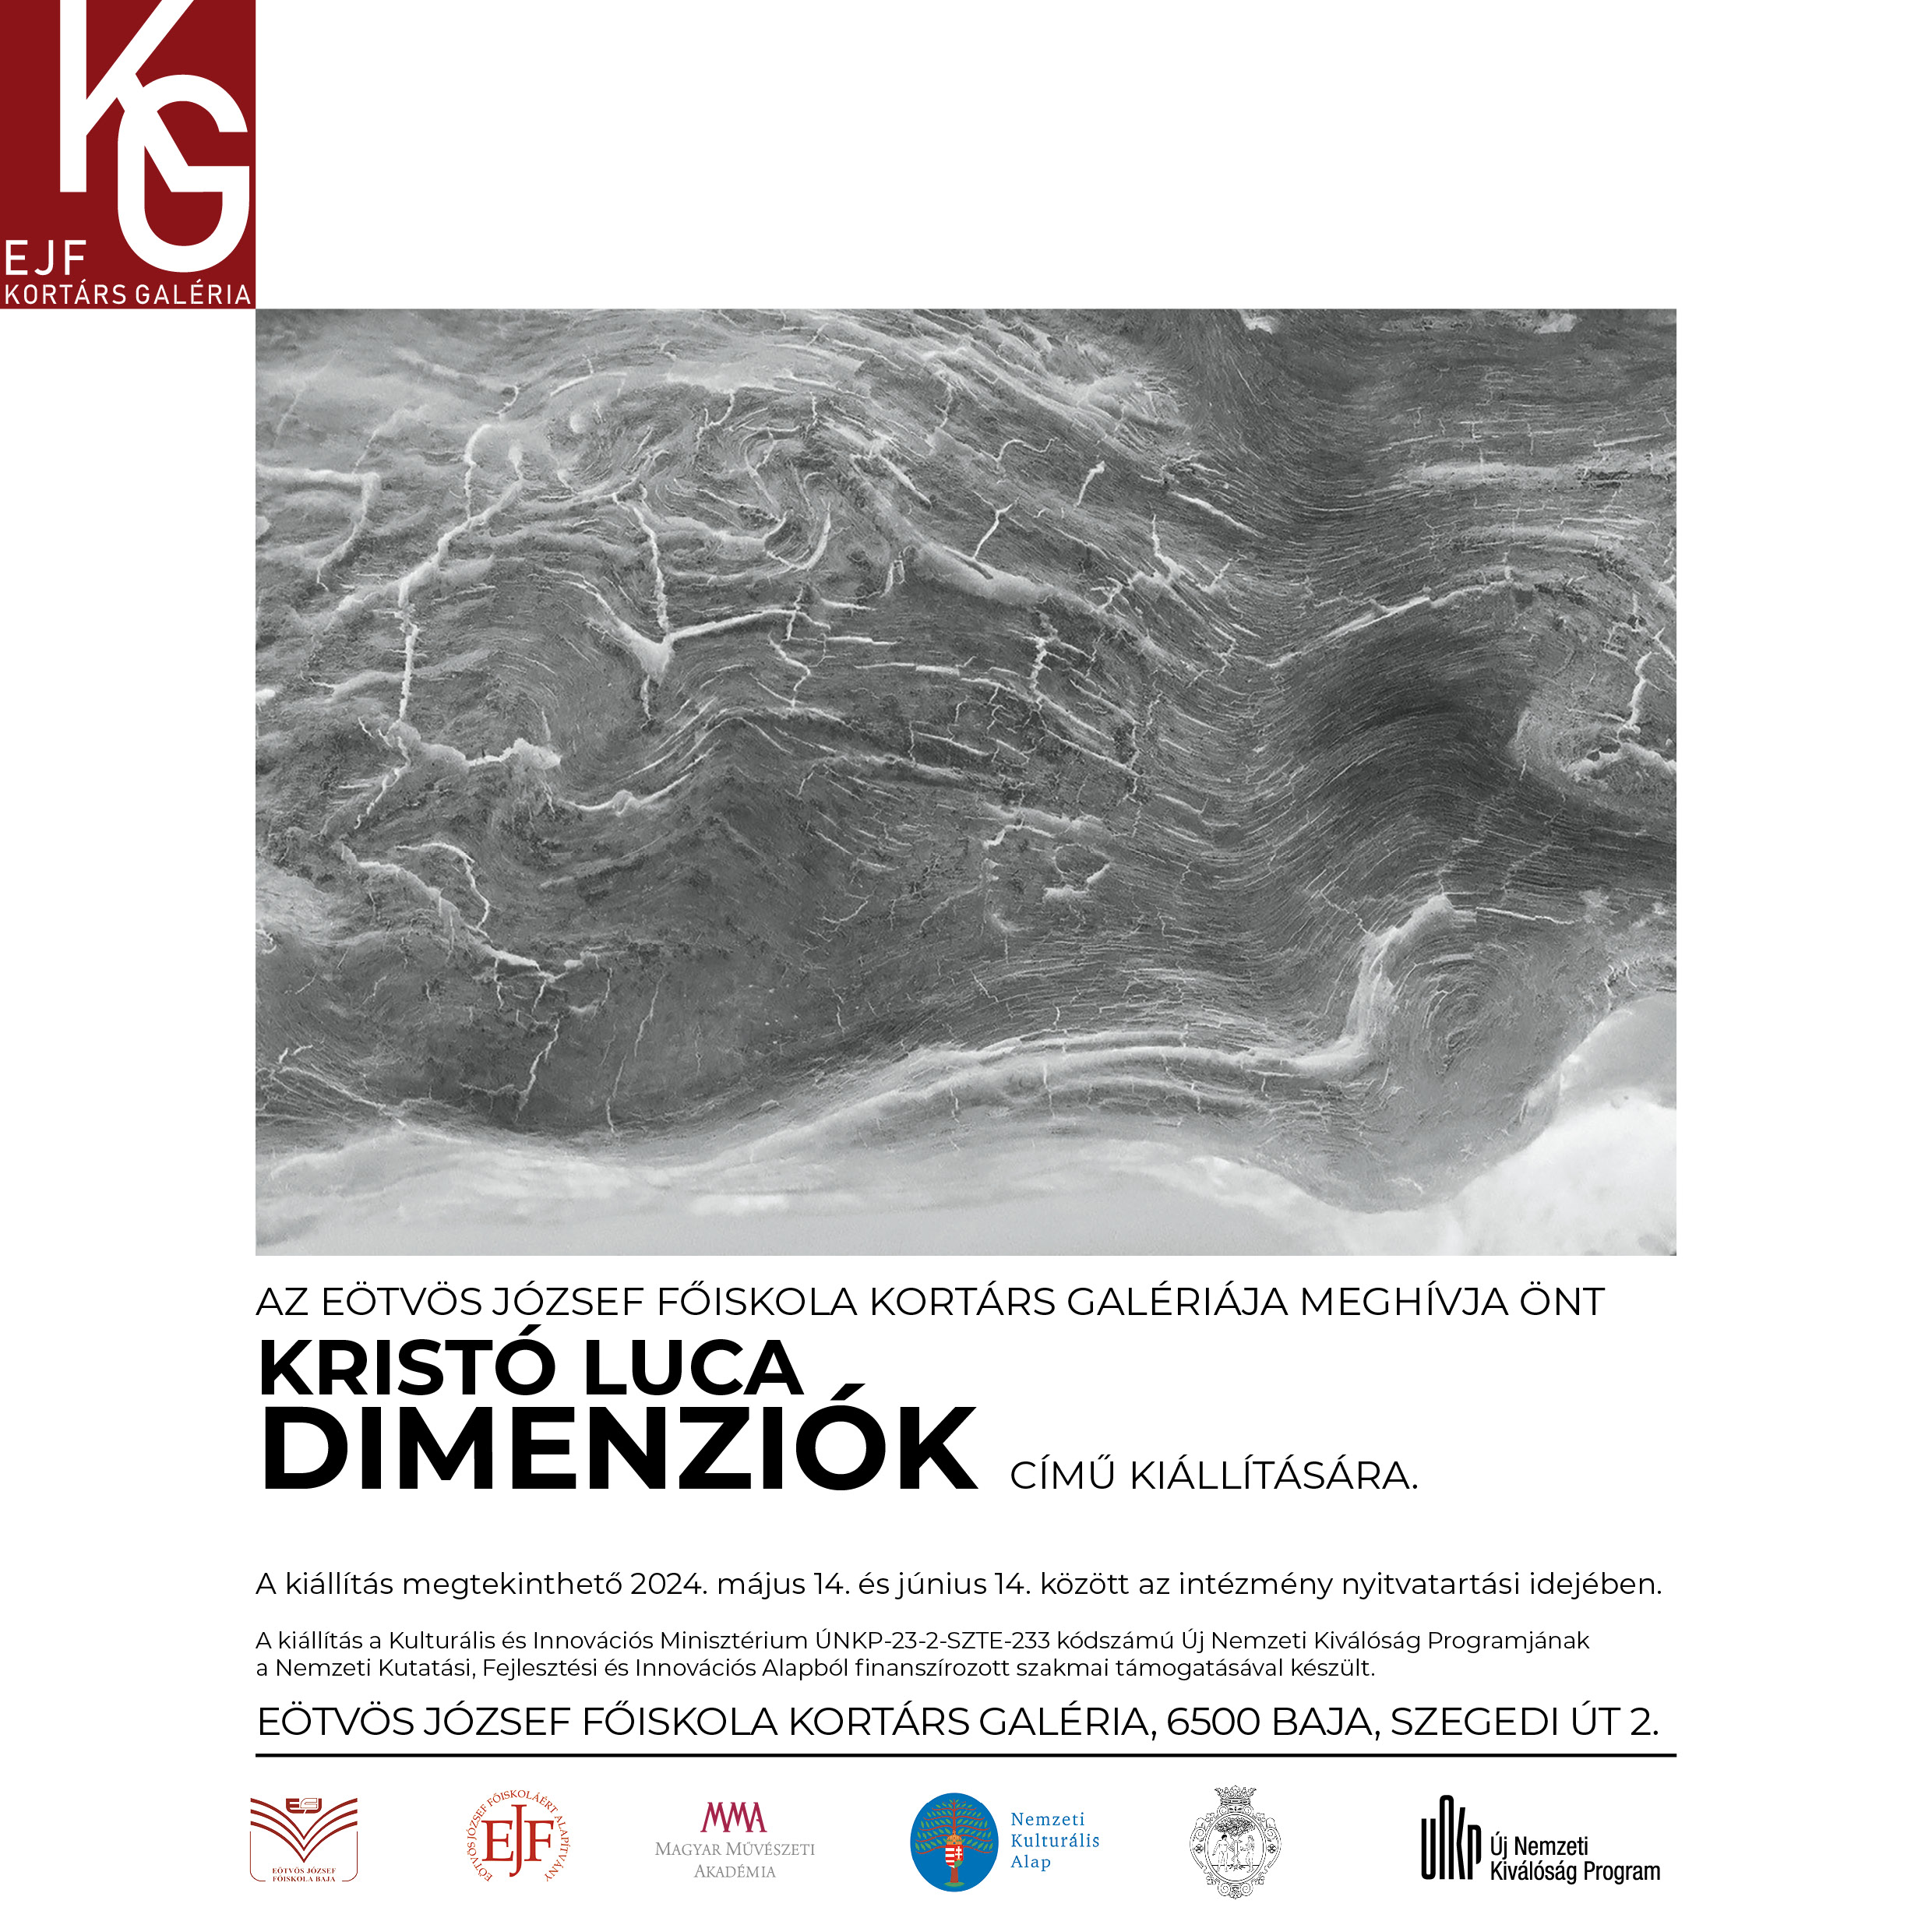 Meghívó Kristó Luca kiállításának megnyitójára.